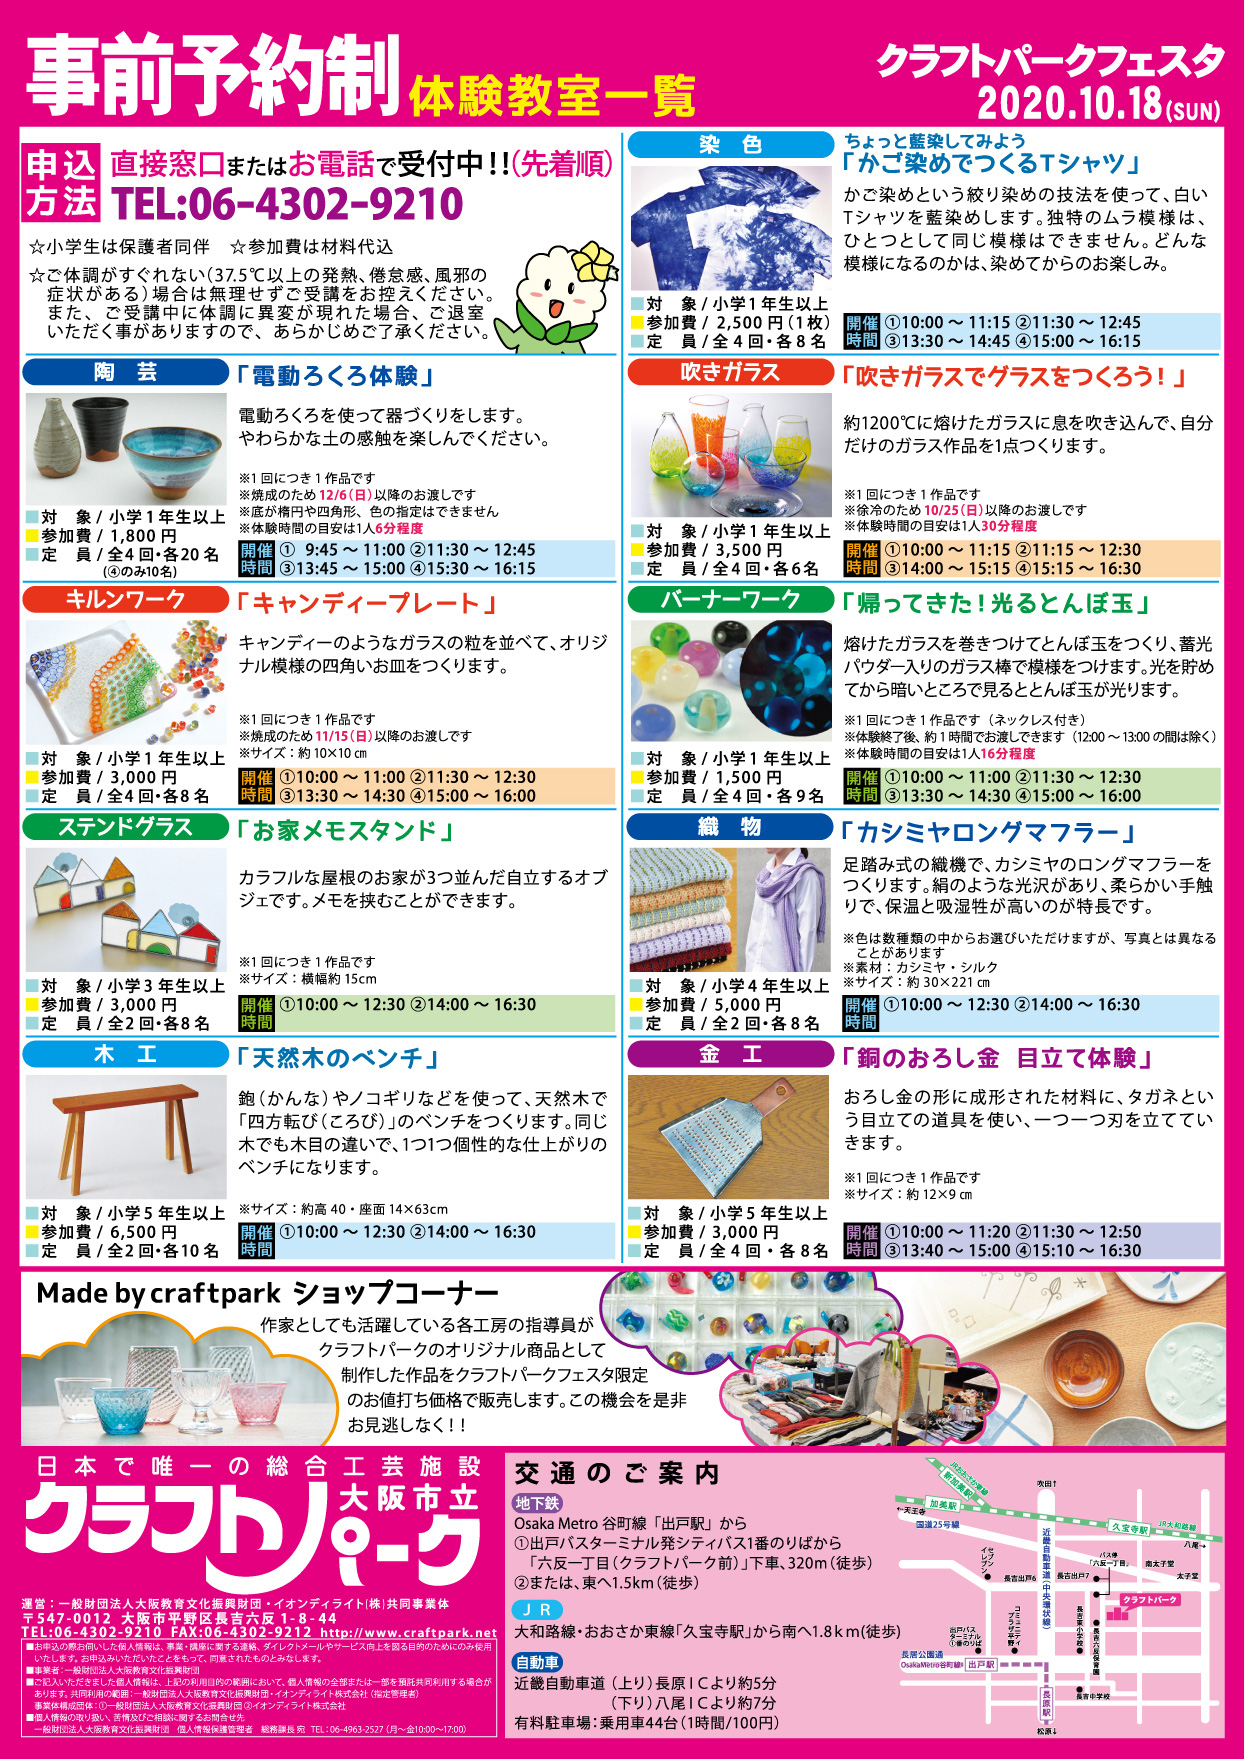 10月18日 日 クラフトパークフェスタを開催いたします お知らせ イベント情報 日本で唯一の総合工芸施設 大阪市立クラフトパーク